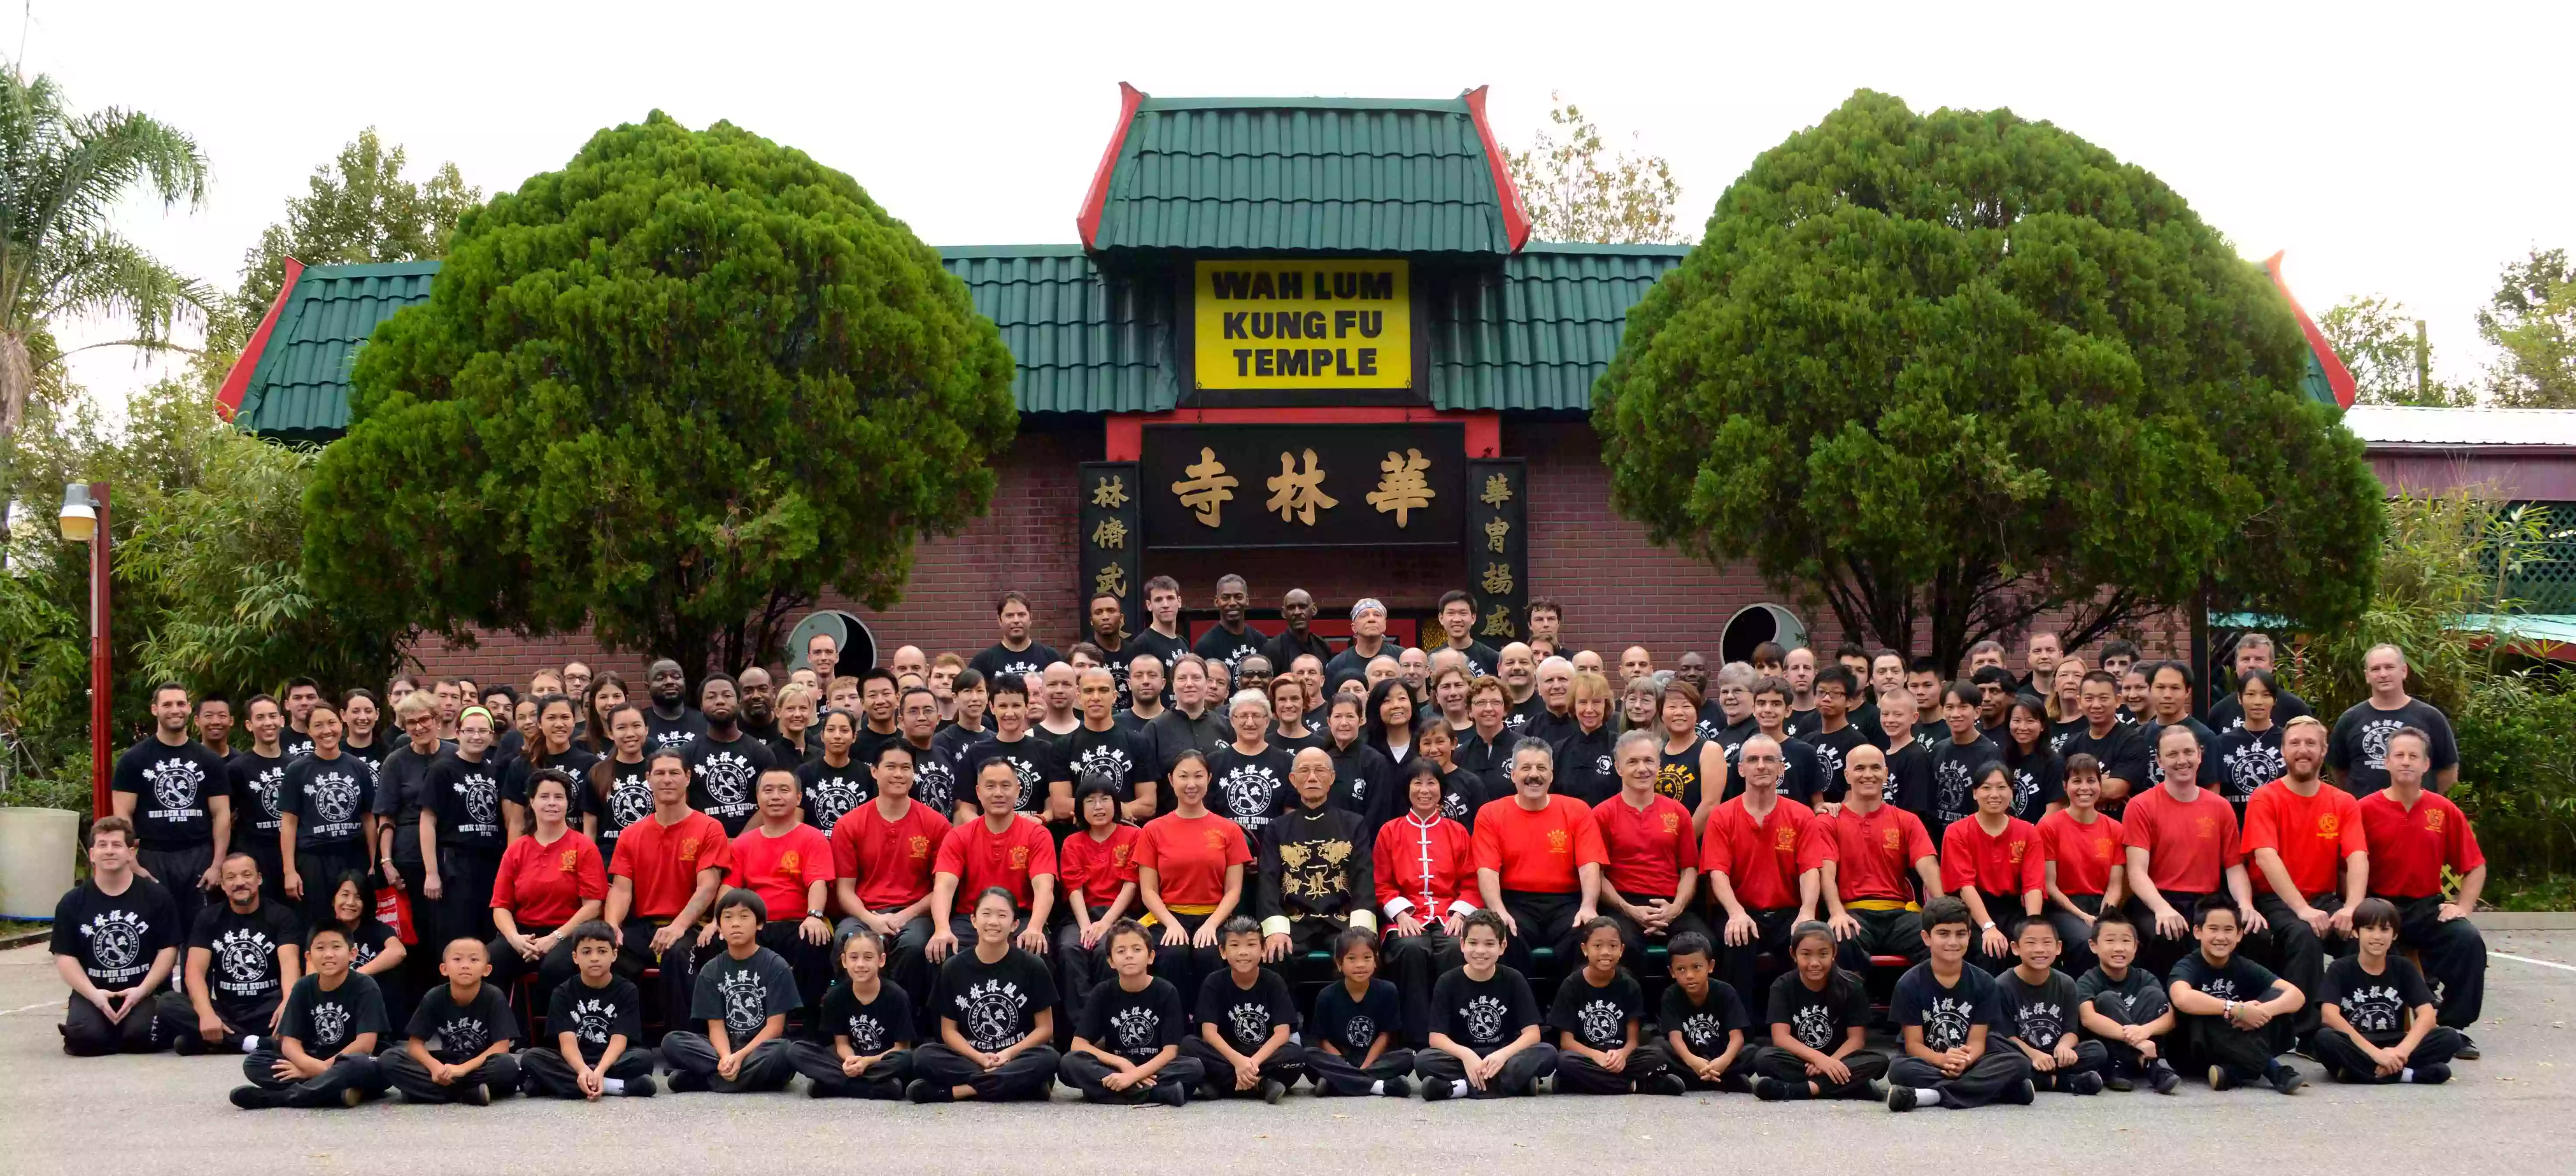 Wah Lum Kung Fu & Tai Chi Temple Orlando